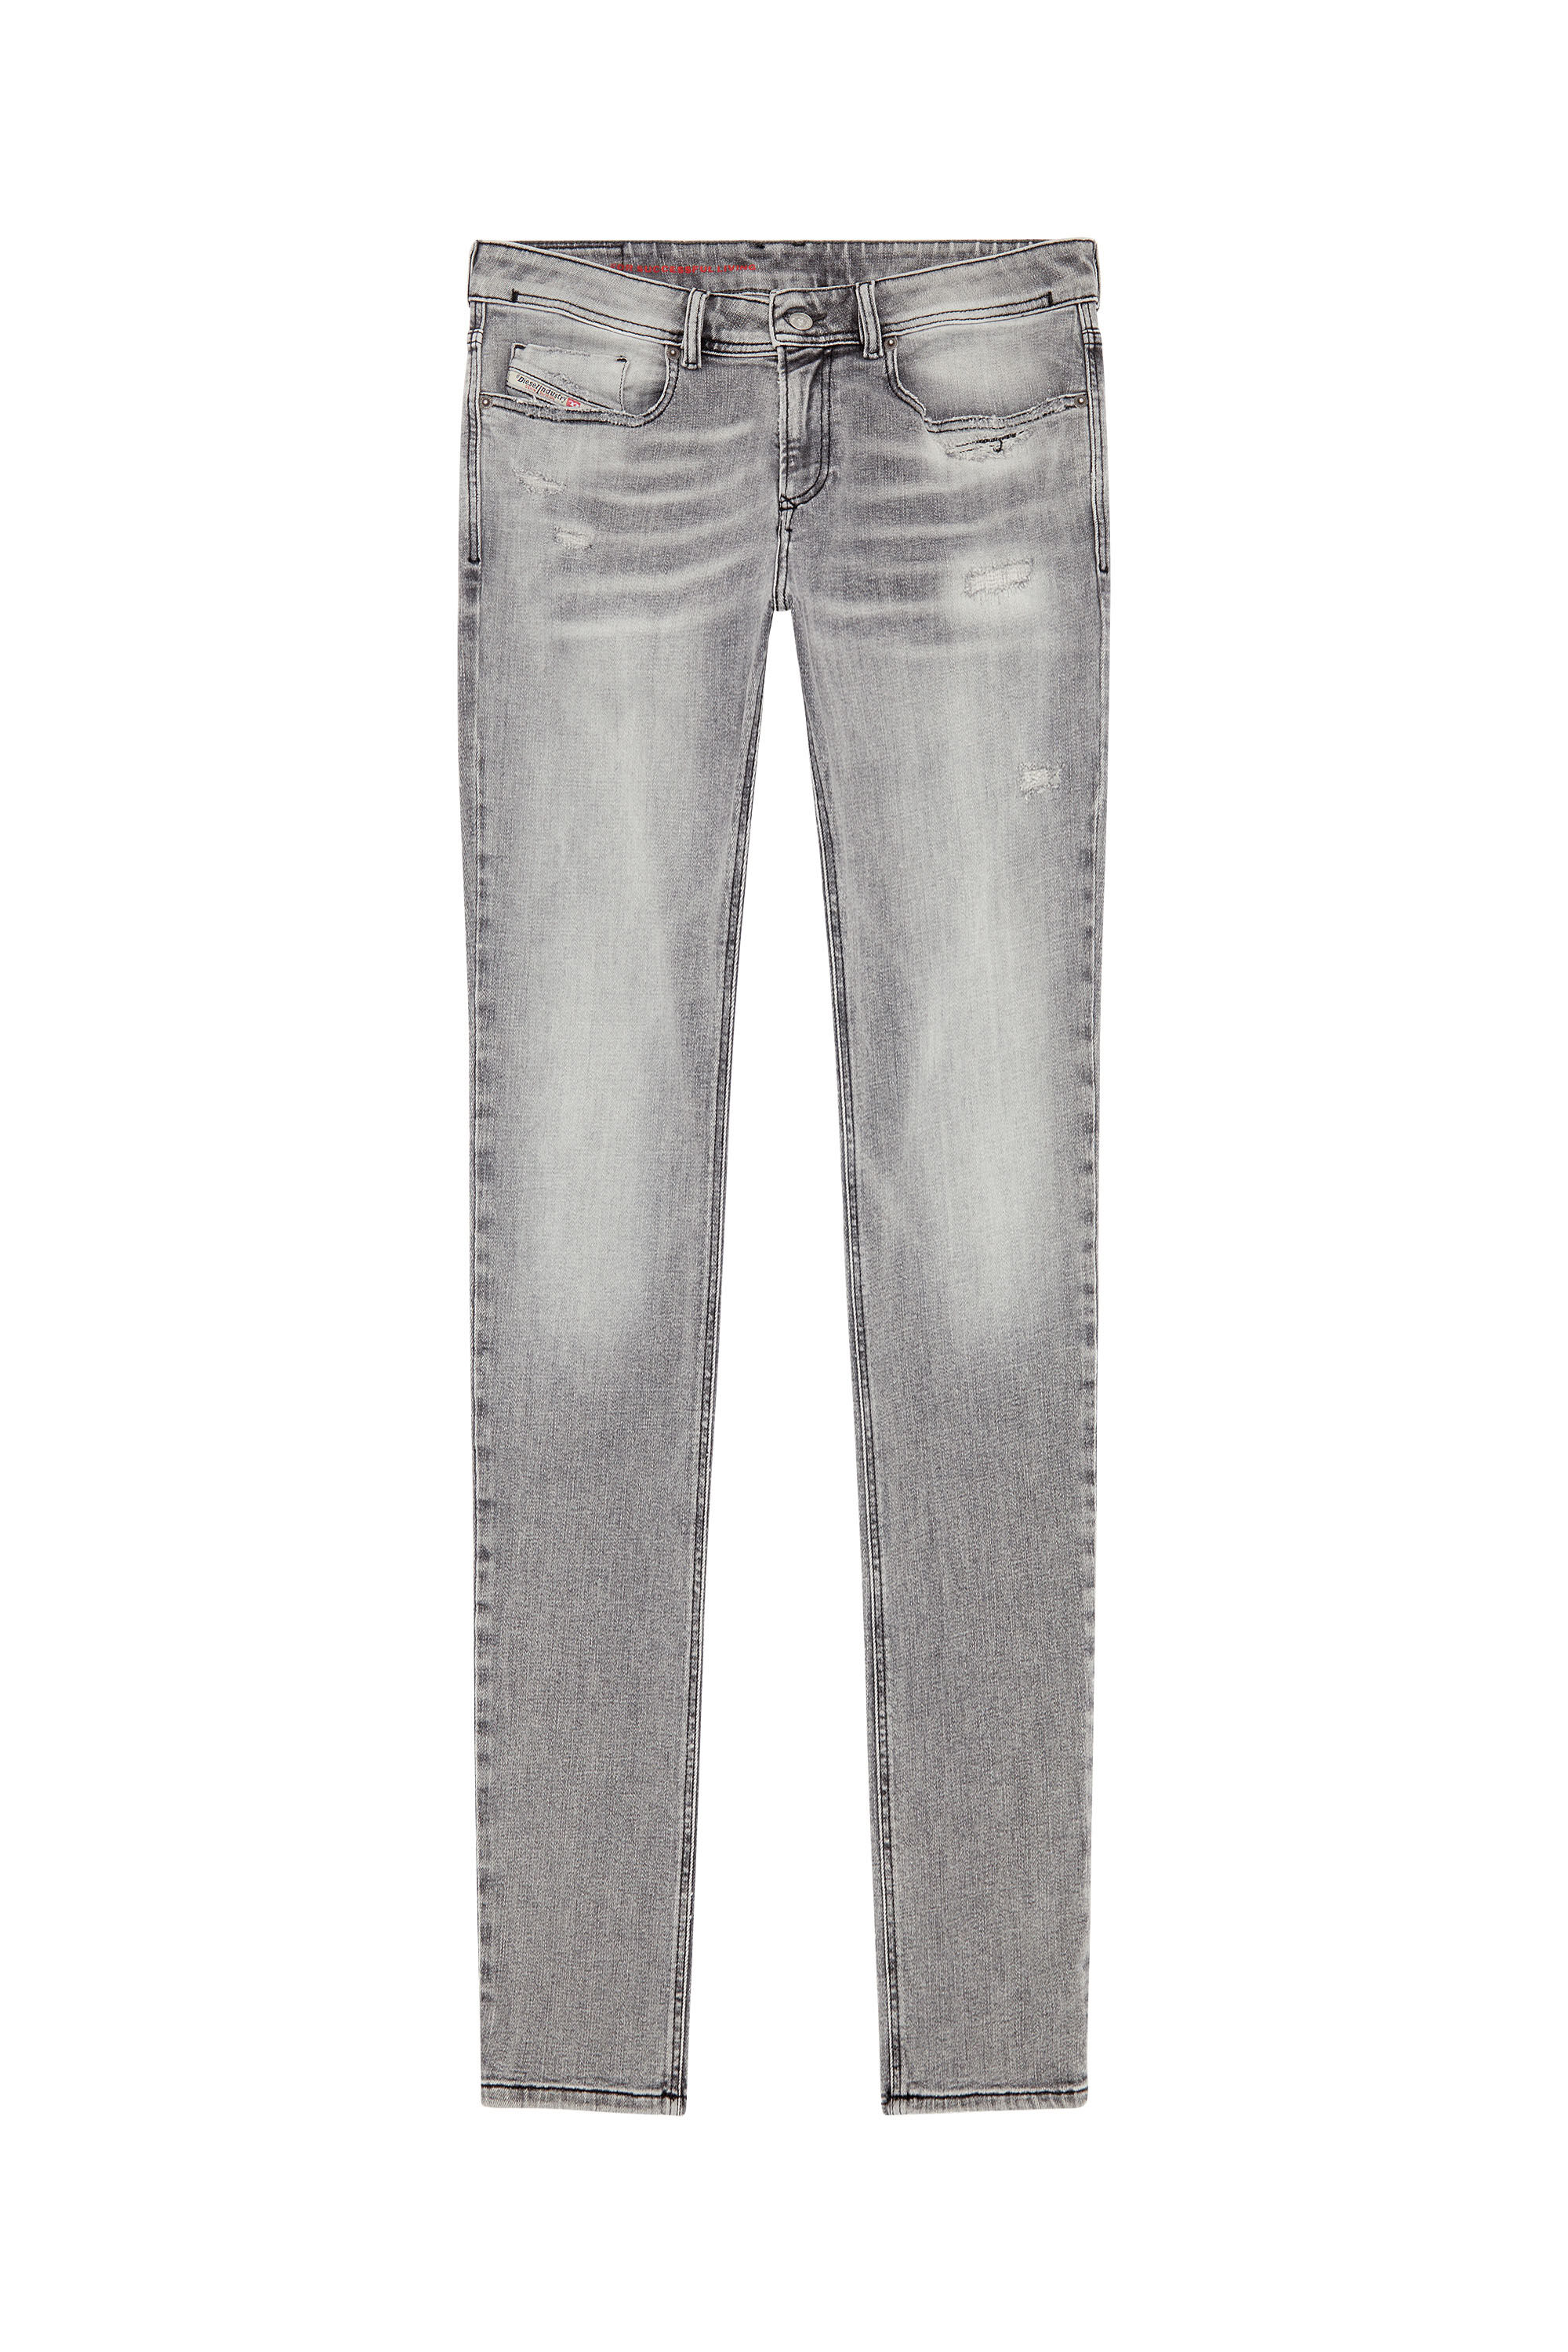 Diesel - Man Skinny Jeans 1979 Sleenker E9B97, Black/Dark grey - Image 2